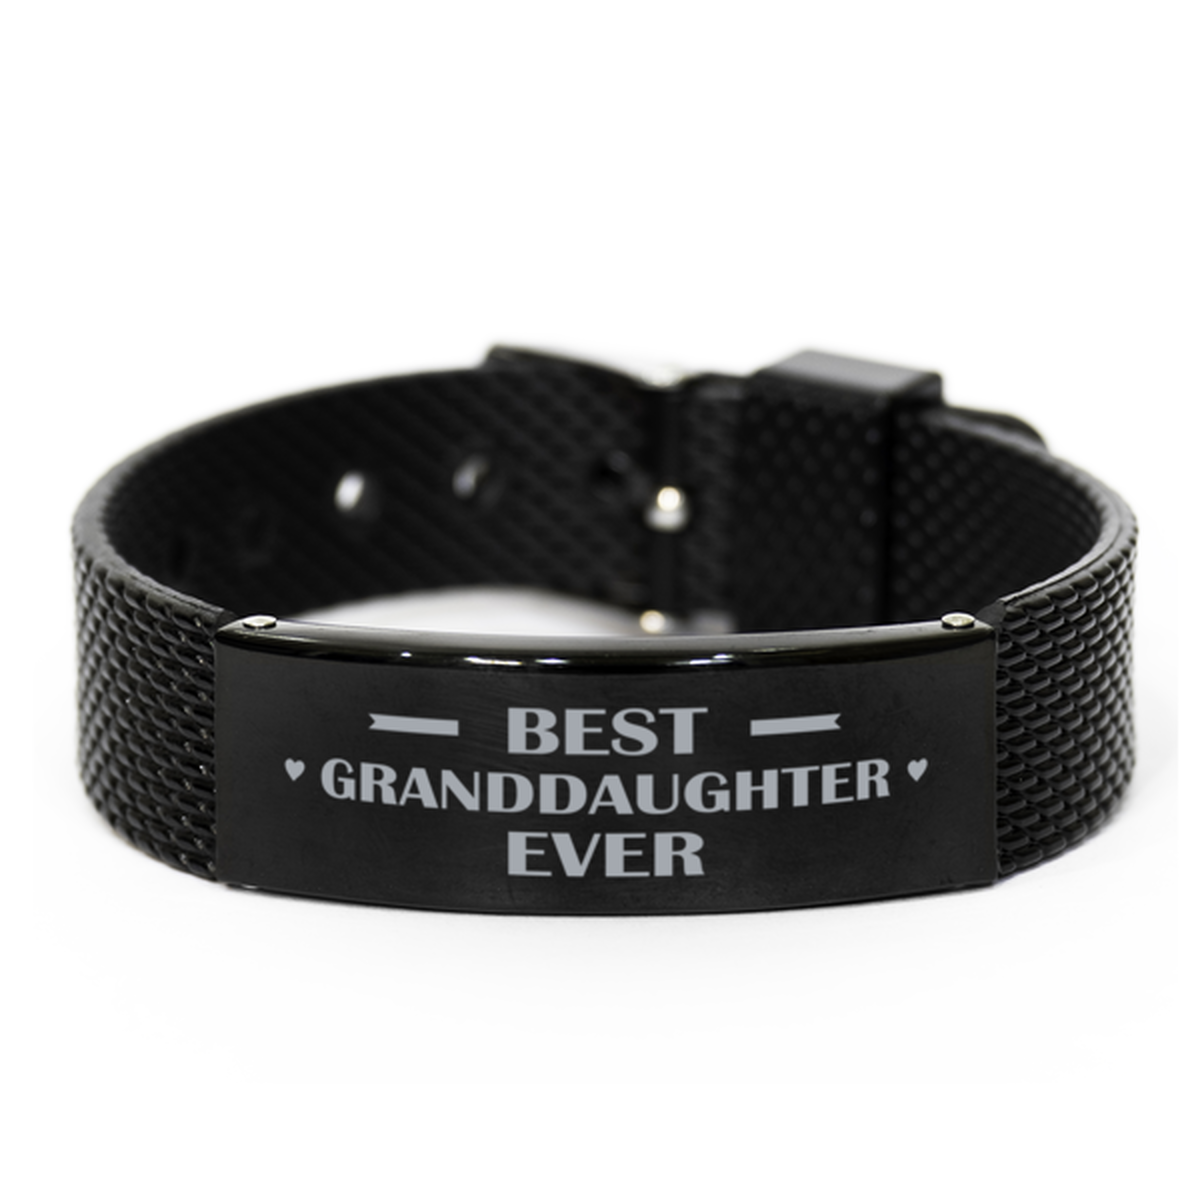 Best Granddaughter Ever Granddaughter Gifts, Gag Engraved Bracelet For Granddaughter, Best Family Gifts For Women